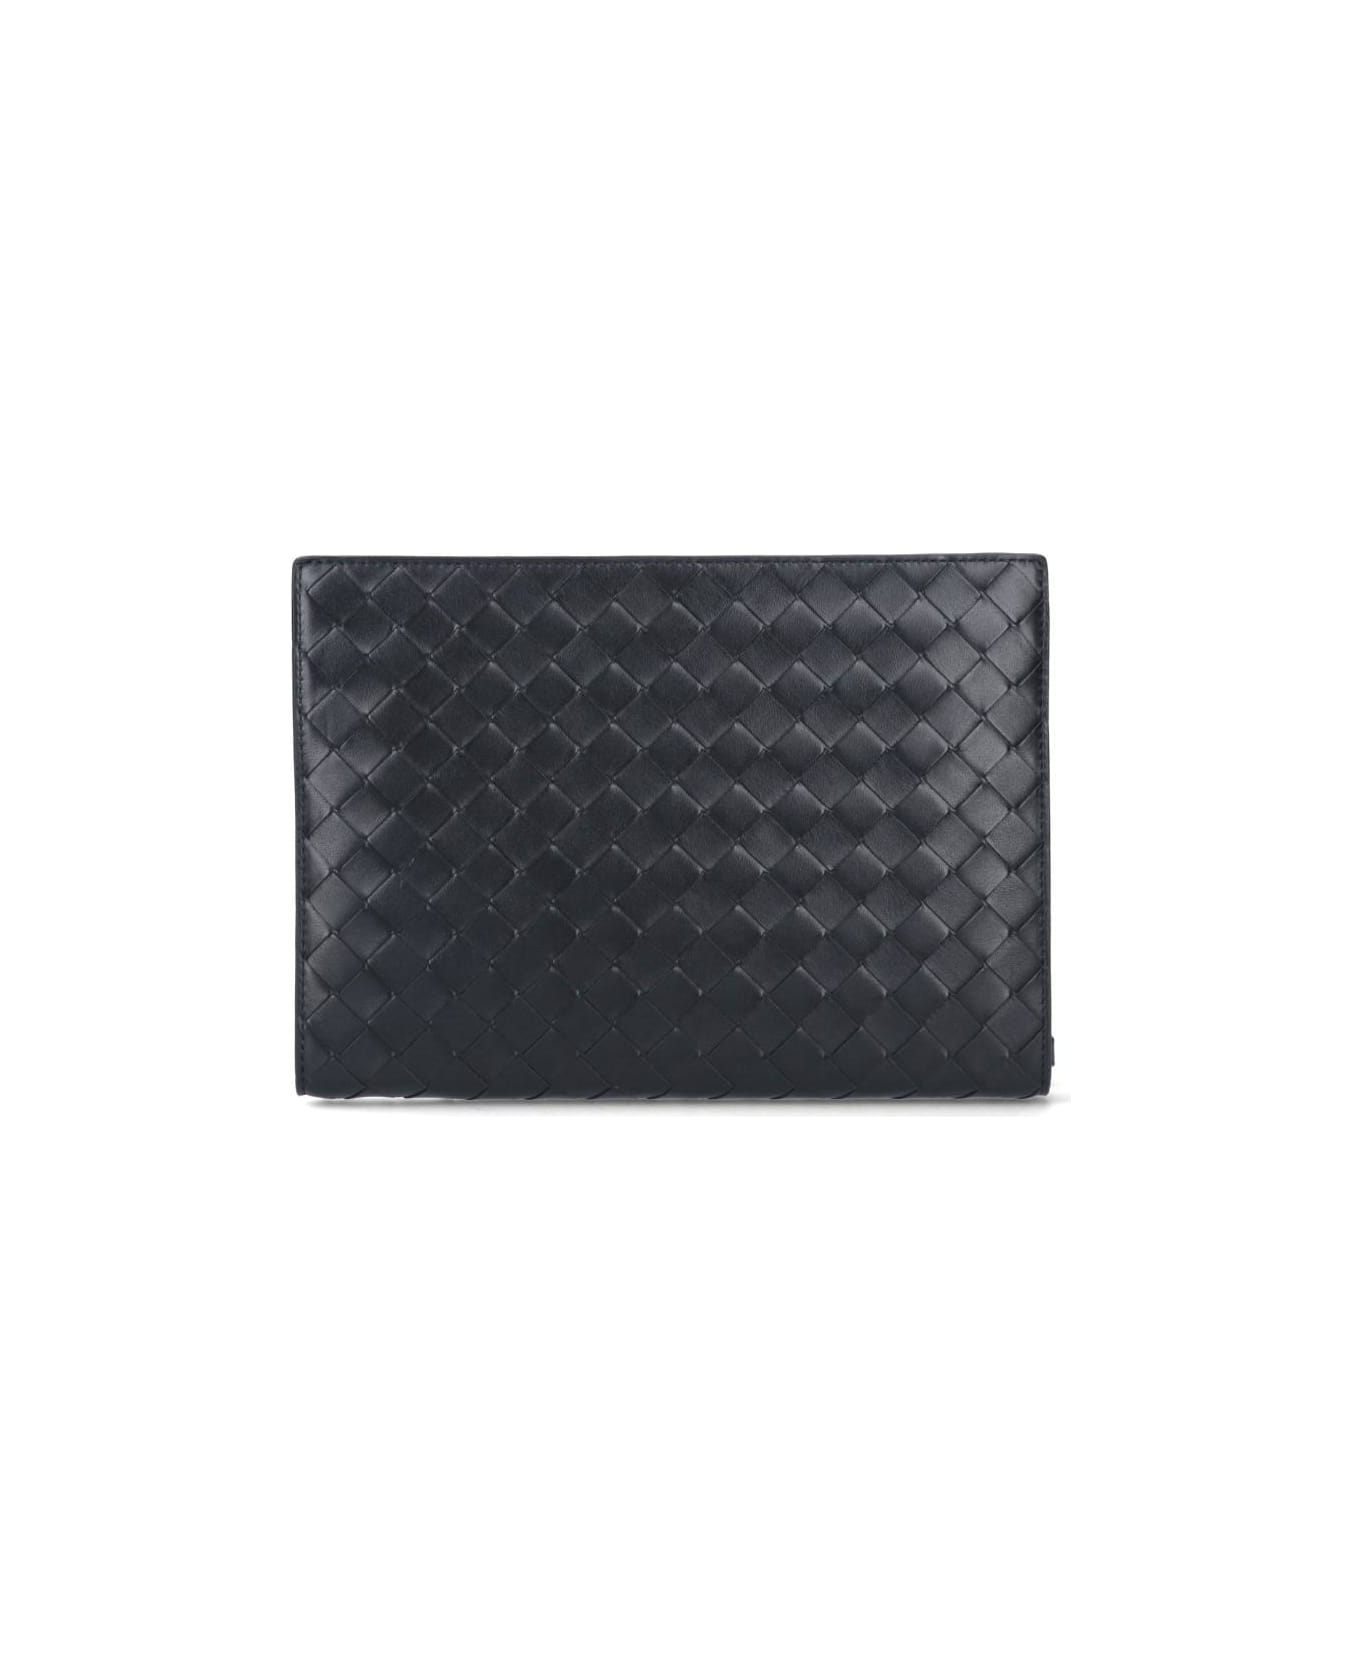 Bottega Veneta Classic Briefcase - Black